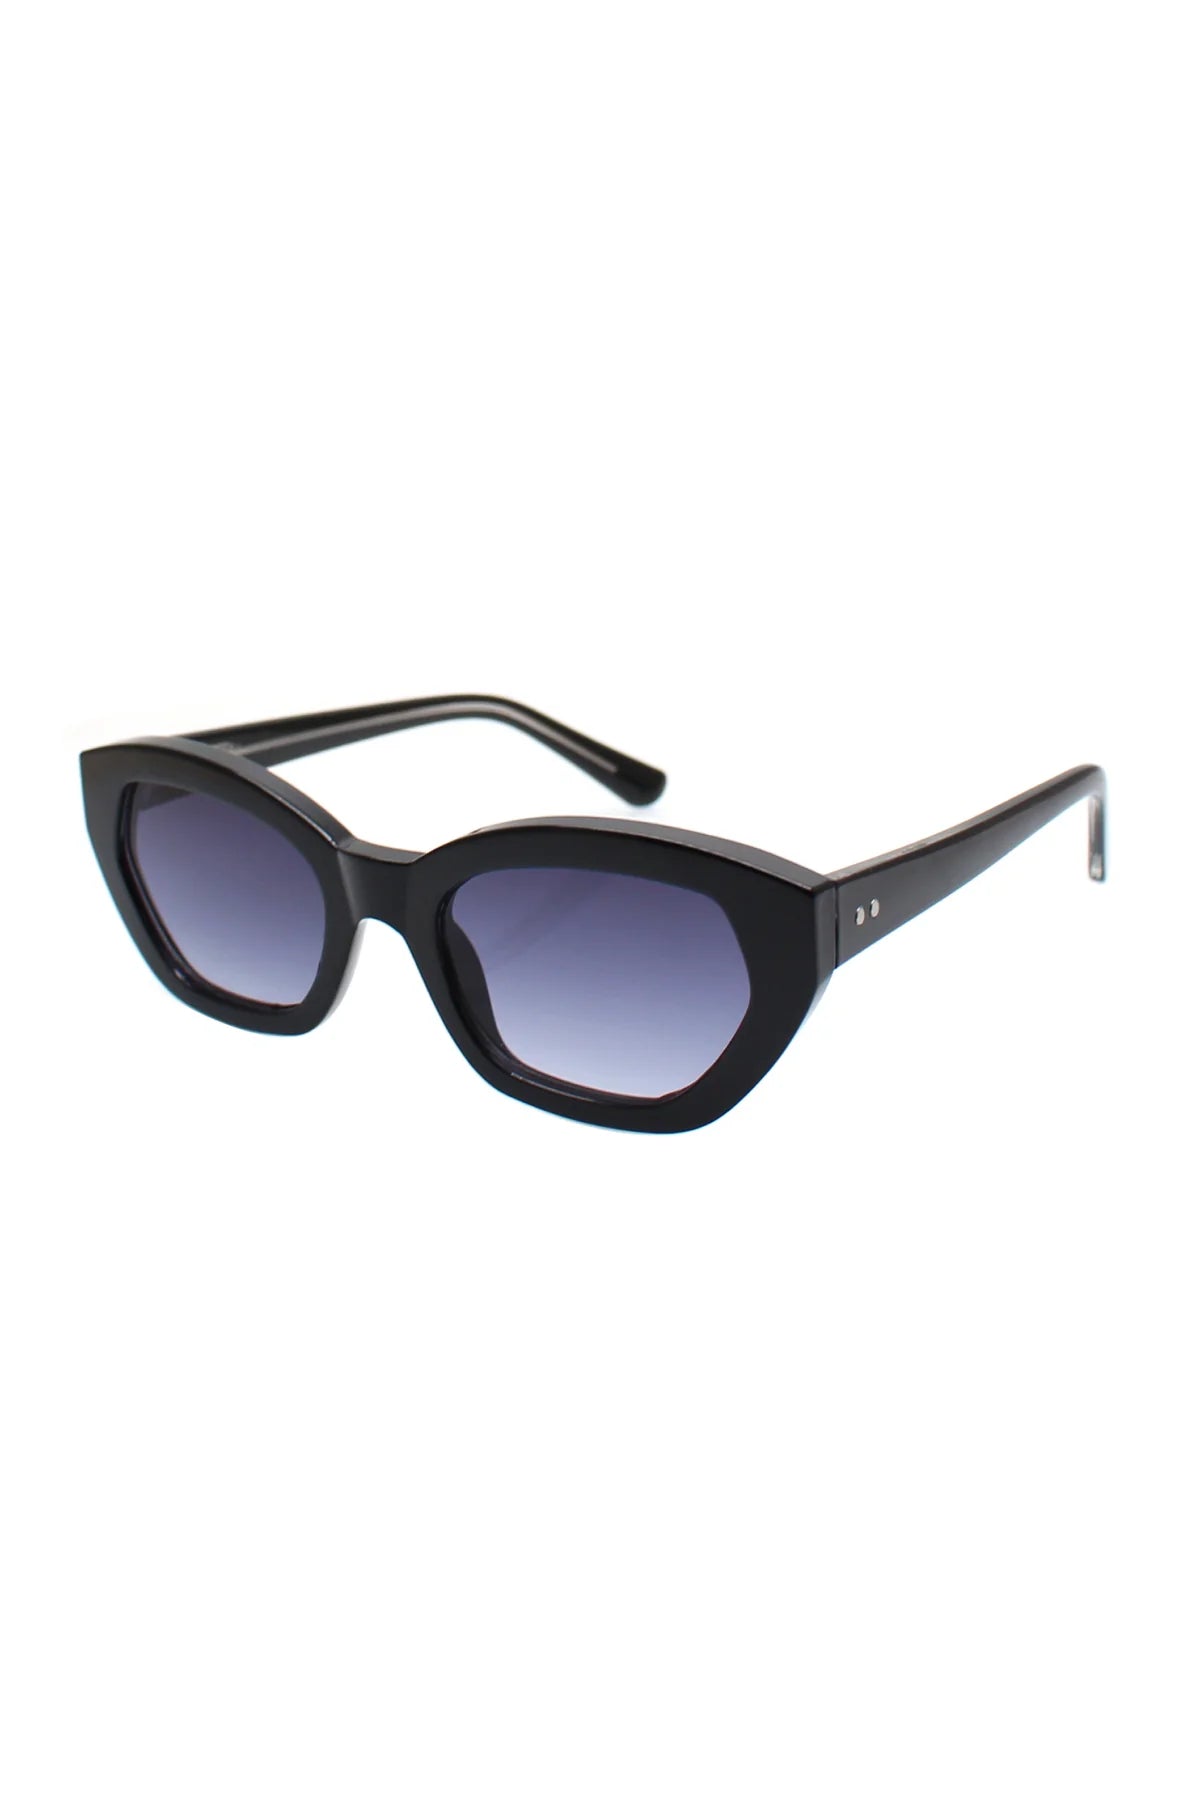 Martine Black Sunglasses